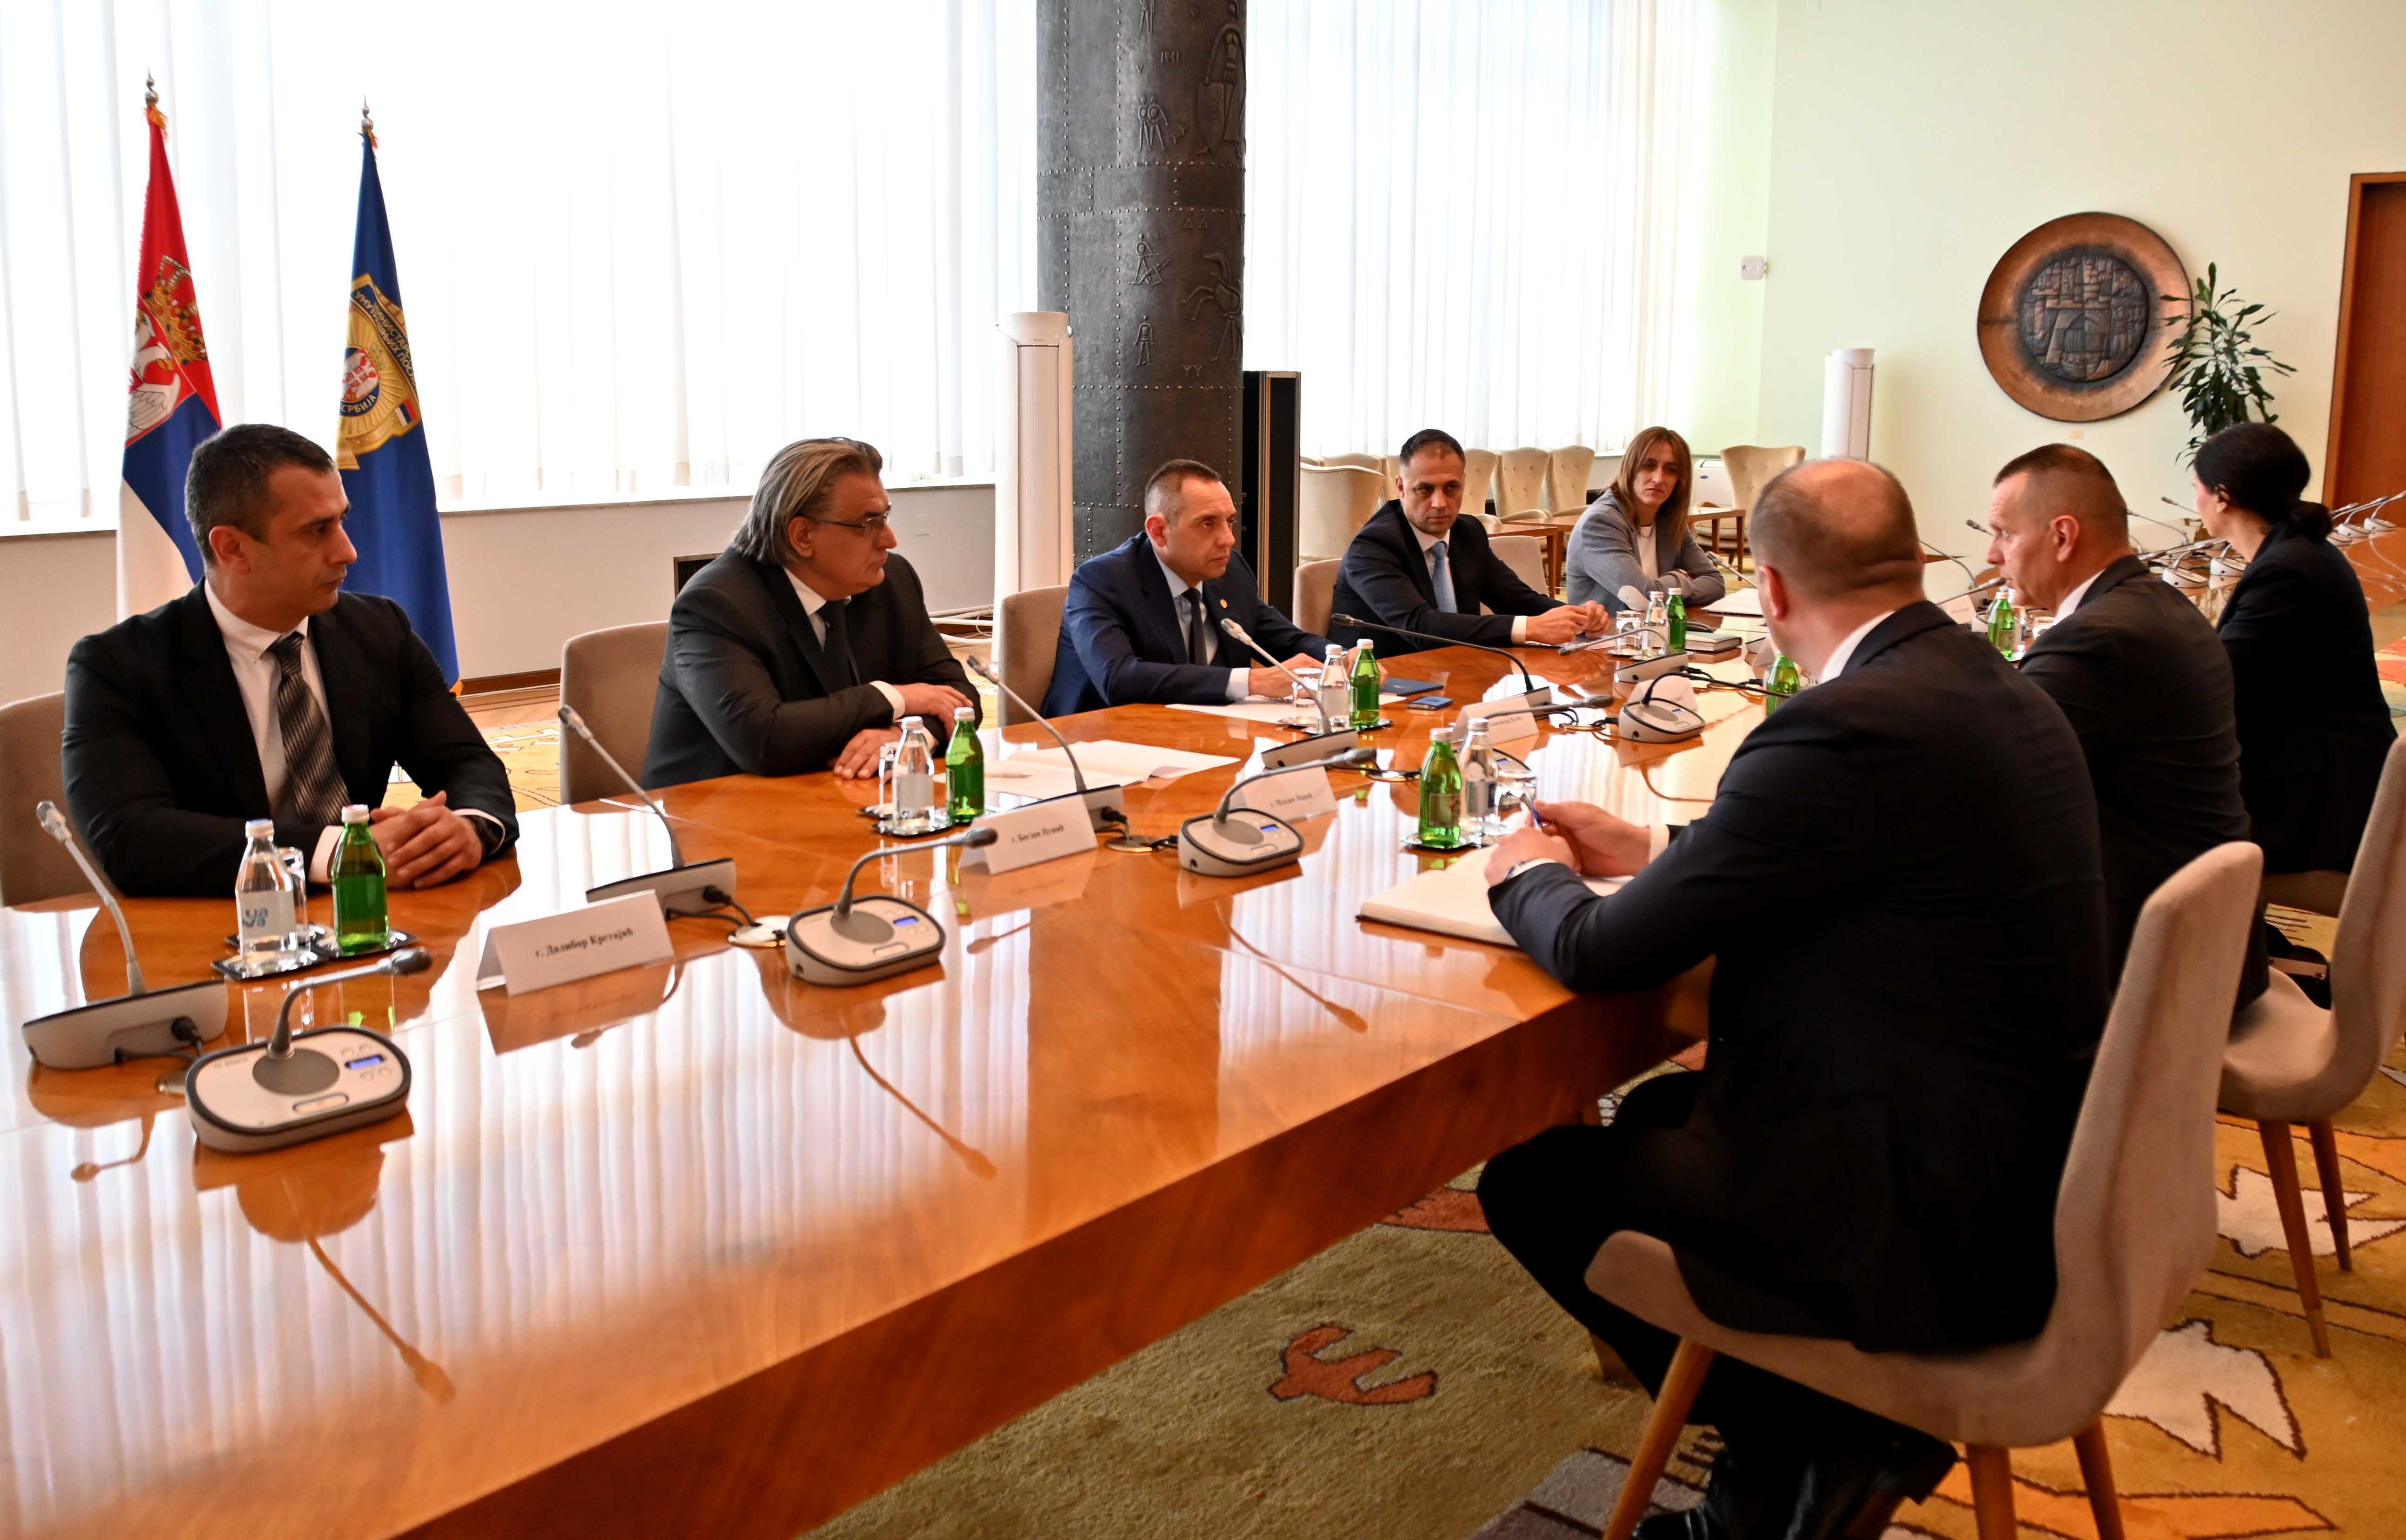 Ministri Vulin i Lukač razgovarali o dalјem unapređenju saradnje u oblasti unutrašnjih poslova